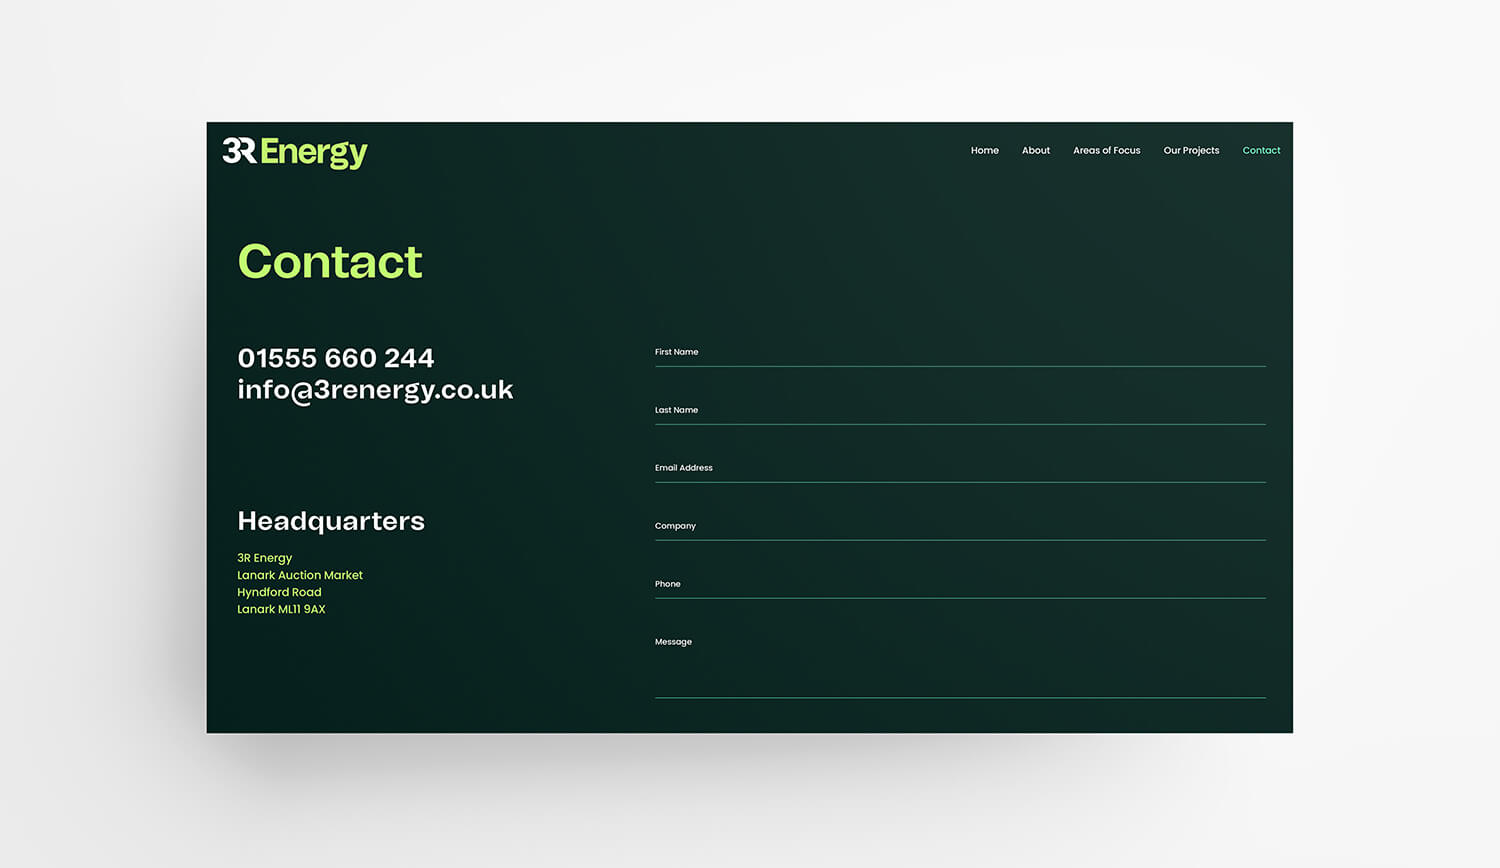 3REnergy website screenshot of contact form